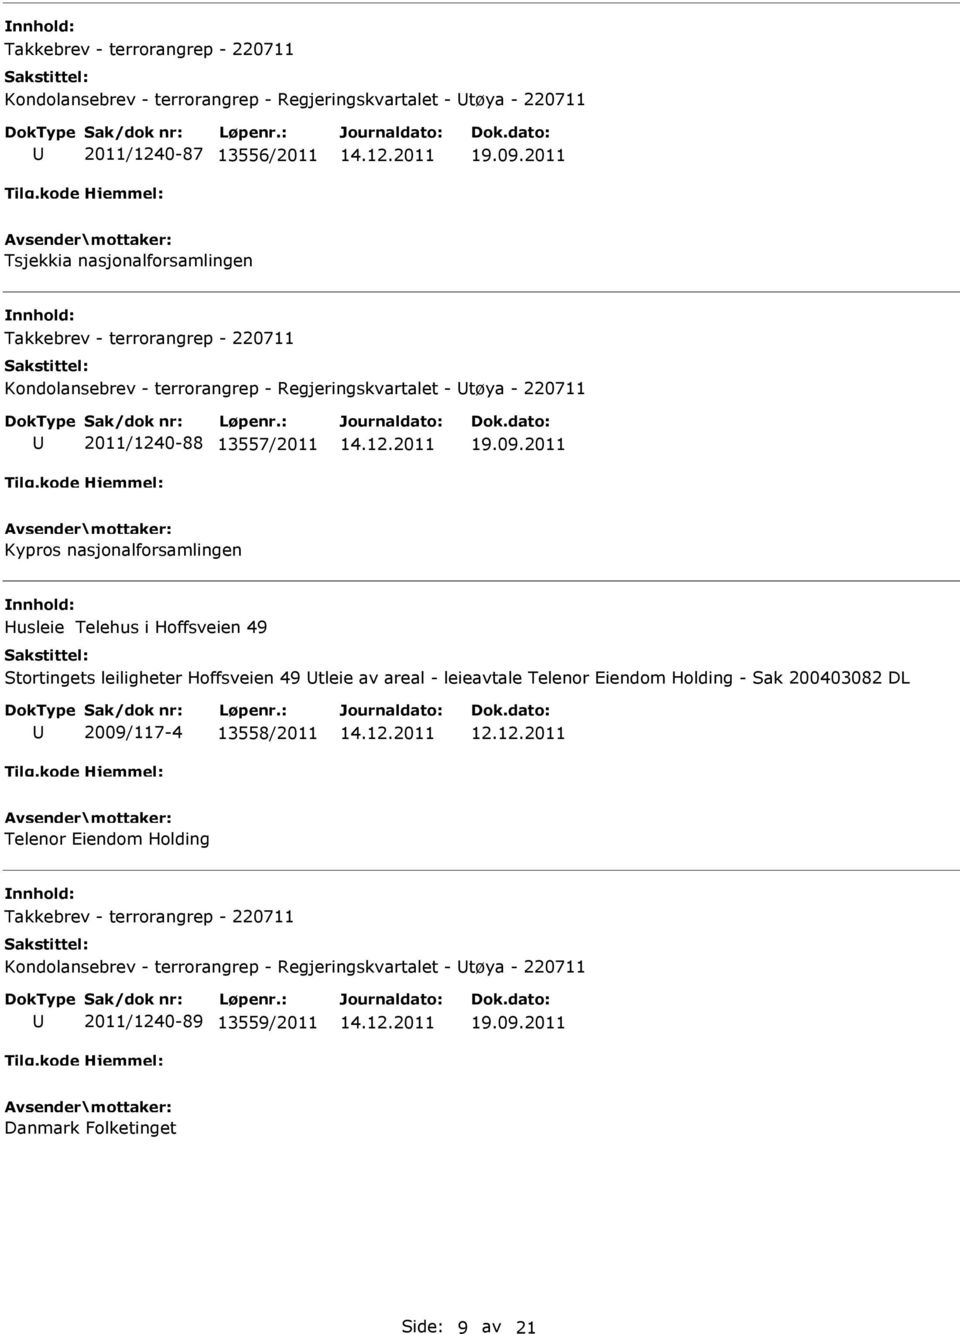 Stortingets leiligheter Hoffsveien 49 tleie av areal - leieavtale Telenor Eiendom Holding - Sak 200403082 DL 2009/117-4 13558/2011